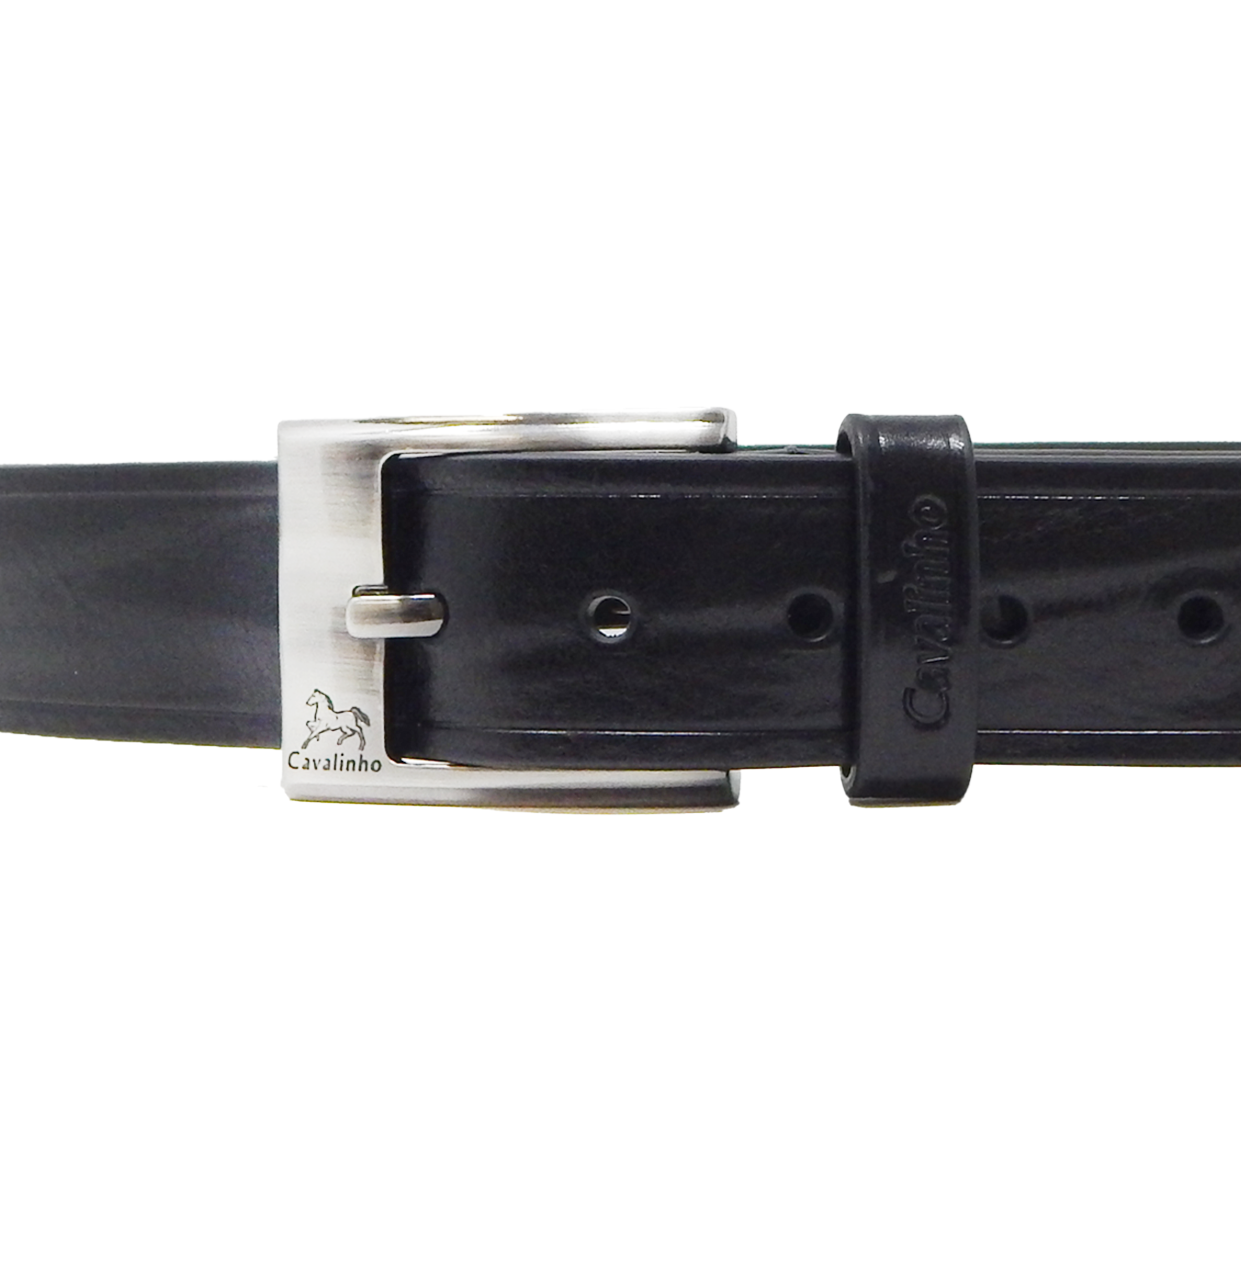 Cavalinho Formal Leather Belt - Black Silver - 58020456.01_81aec4e0-3110-4013-b39f-86d624e50ae1